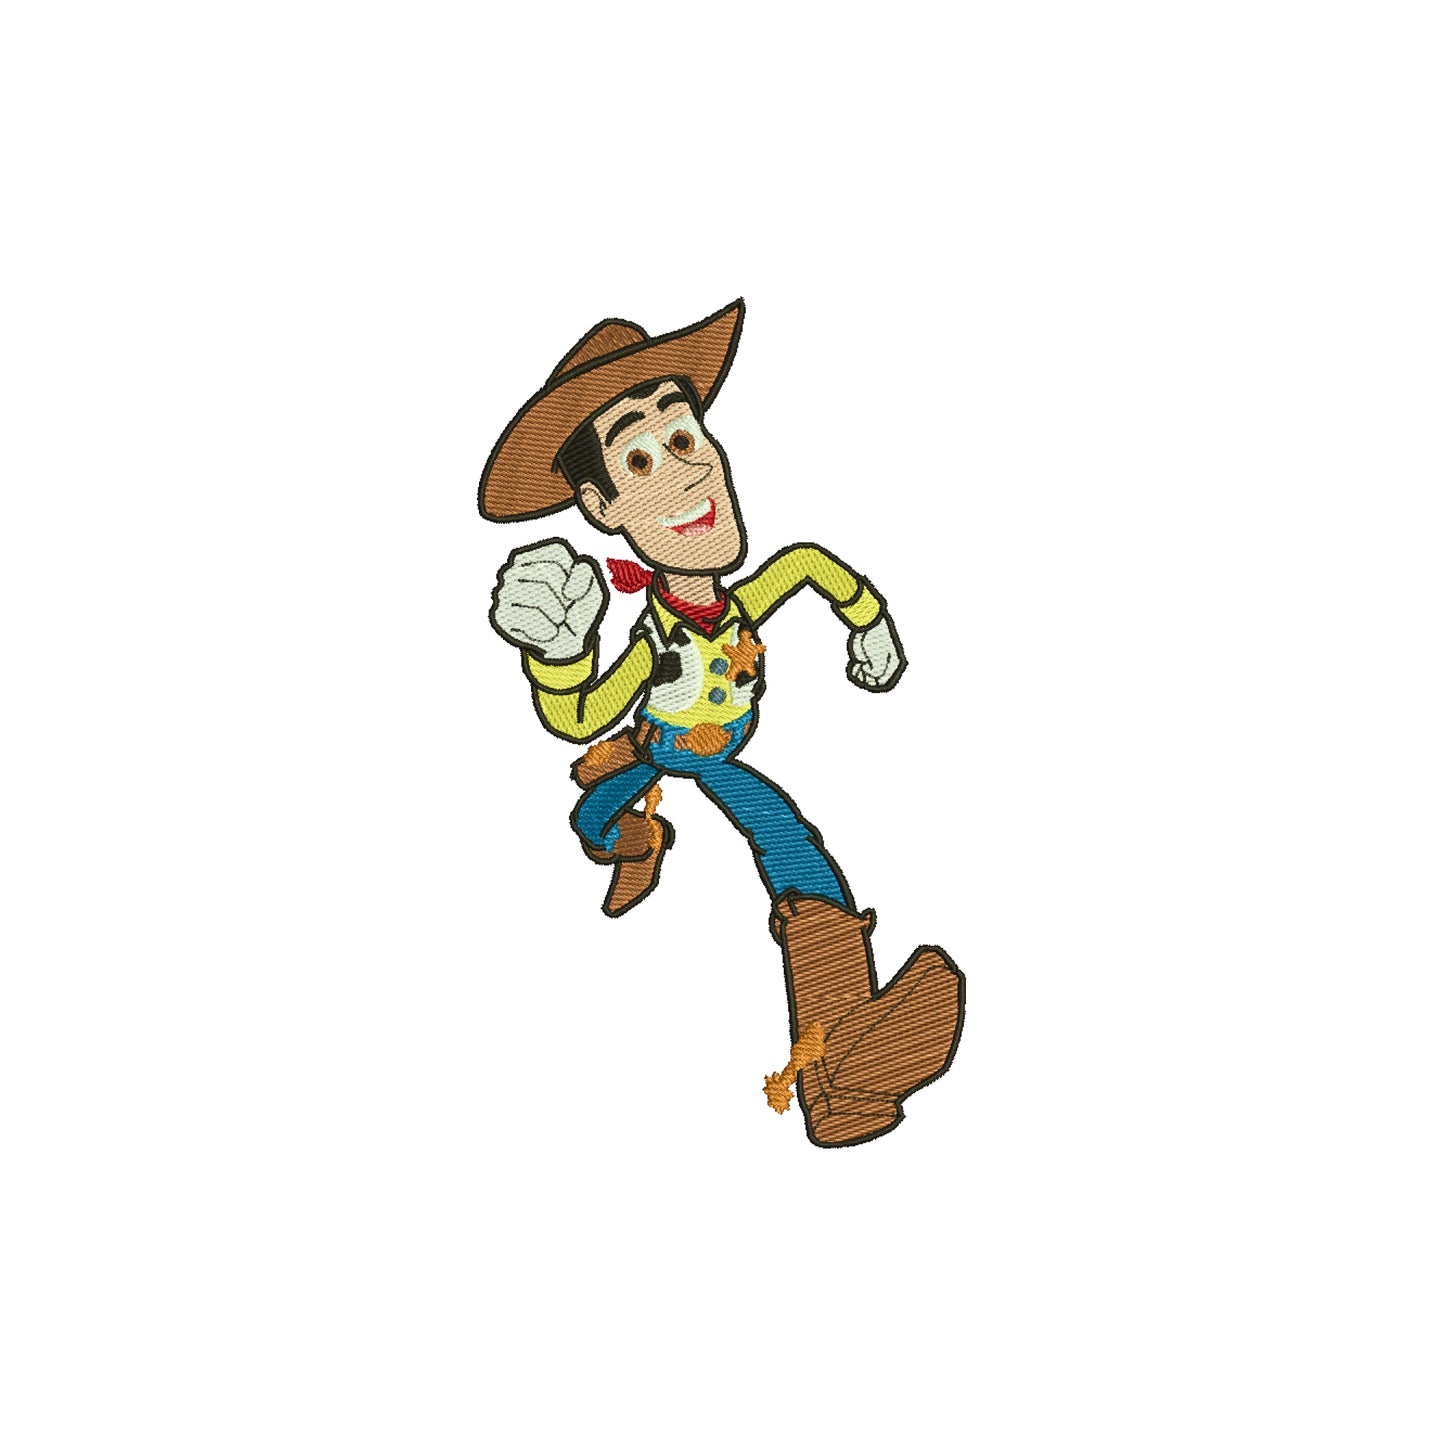 Toy Cowboy man embroidery designs digital - 326004